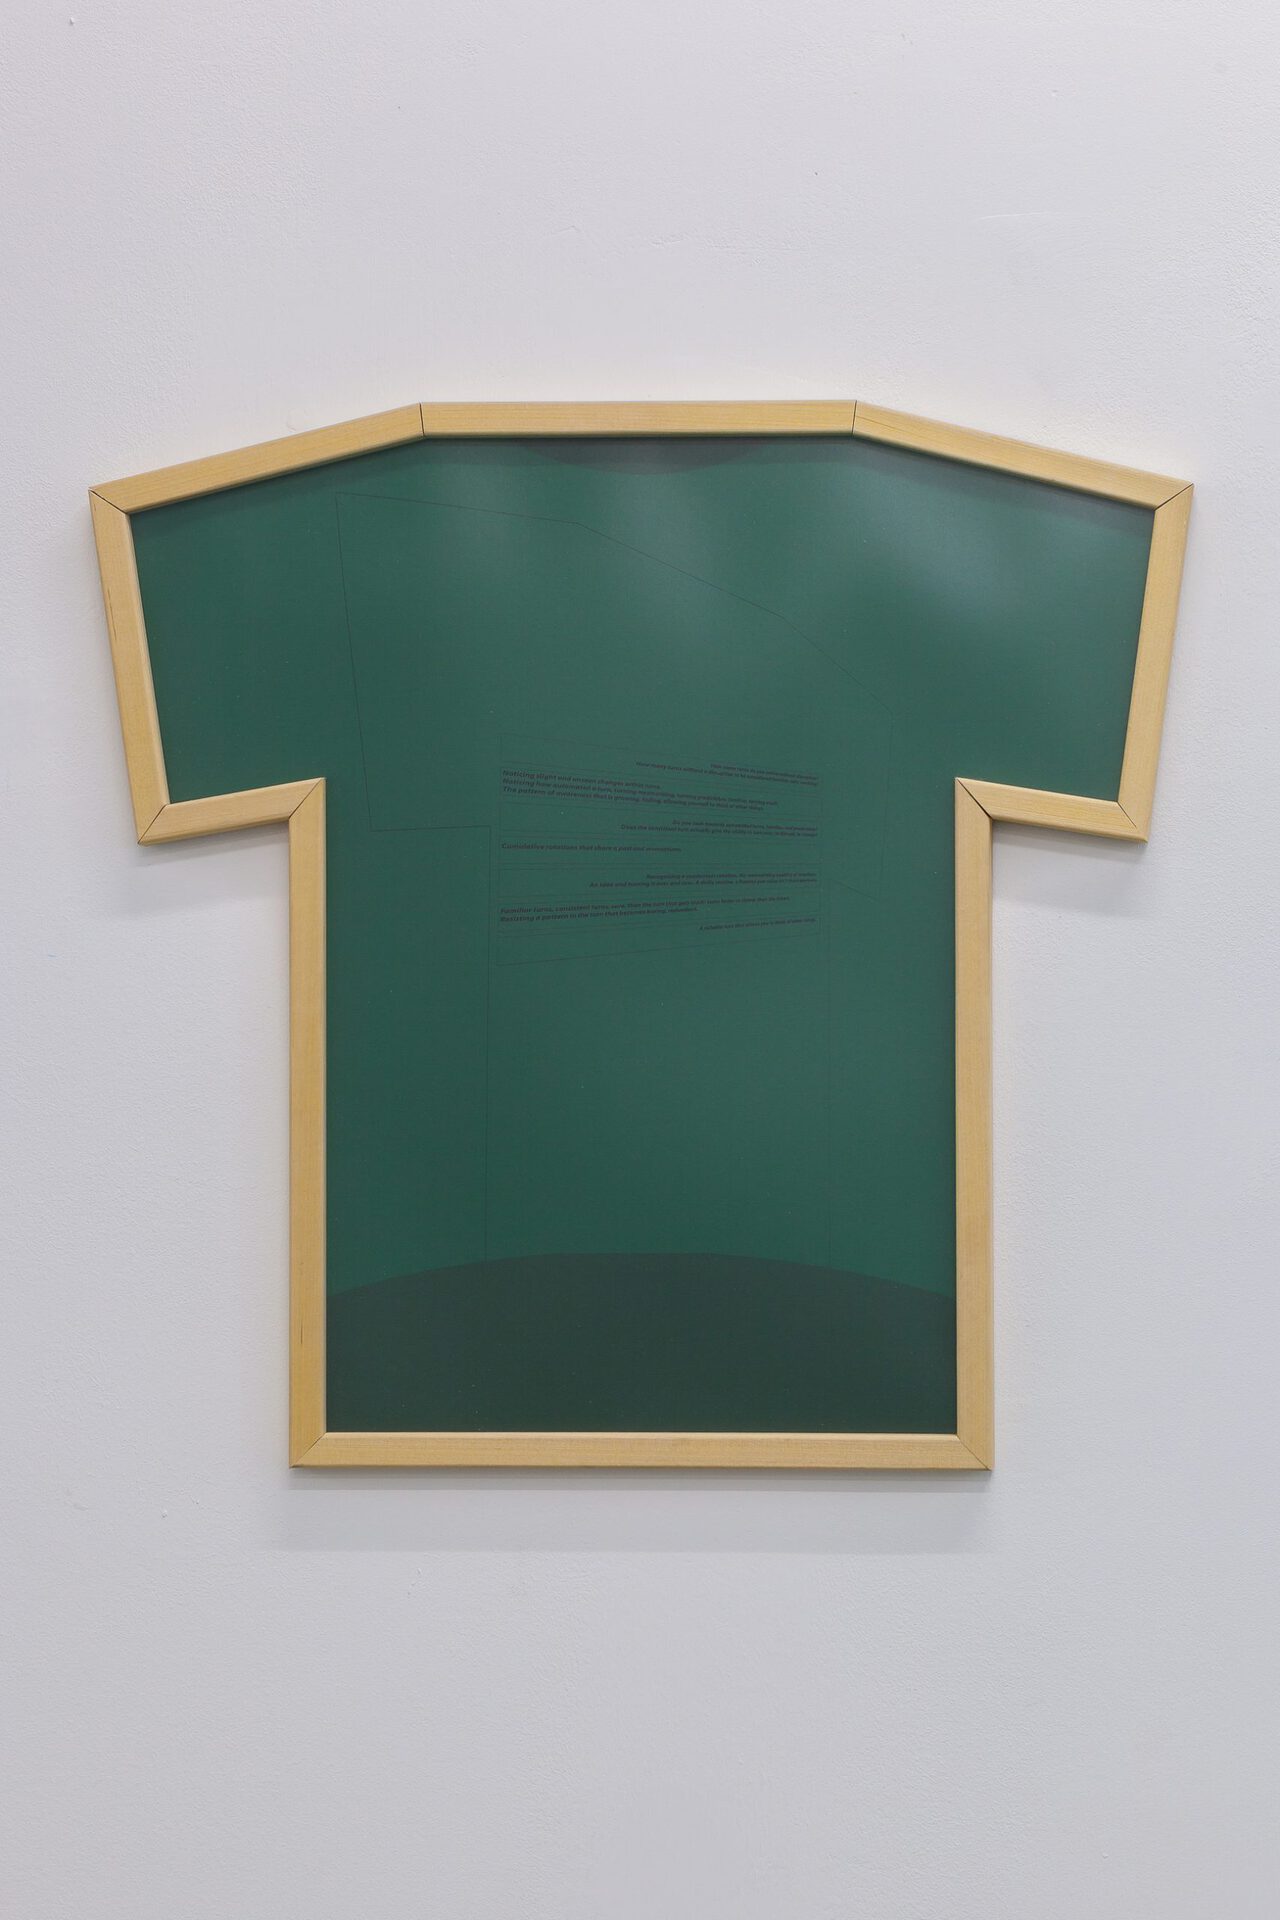 Elizabeth Orr, Rotations Sign, 2020, Digital print, plexiglass, wood frame, 61 x 50.8 cm, 24 x 20 in